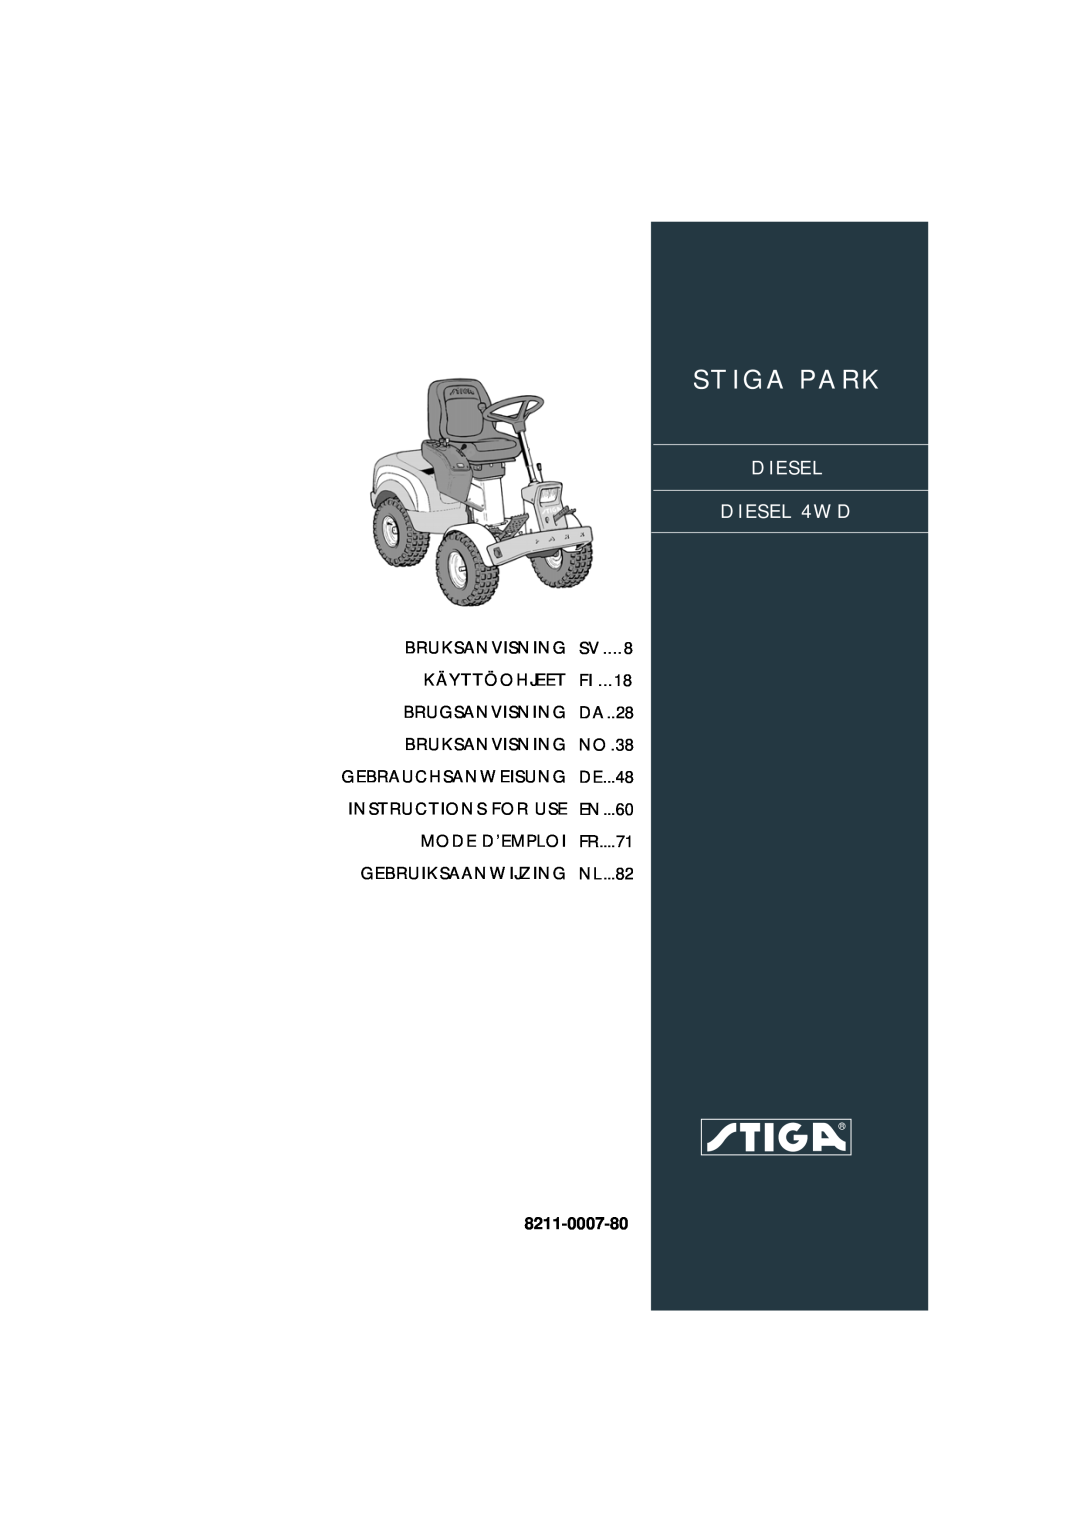 Stiga DIESEL 4WD manual Bruksanvisning, Käyttöohjeet, Brugsanvisning, Gebrauchsanweisung, Instructions For Use, FR....71 